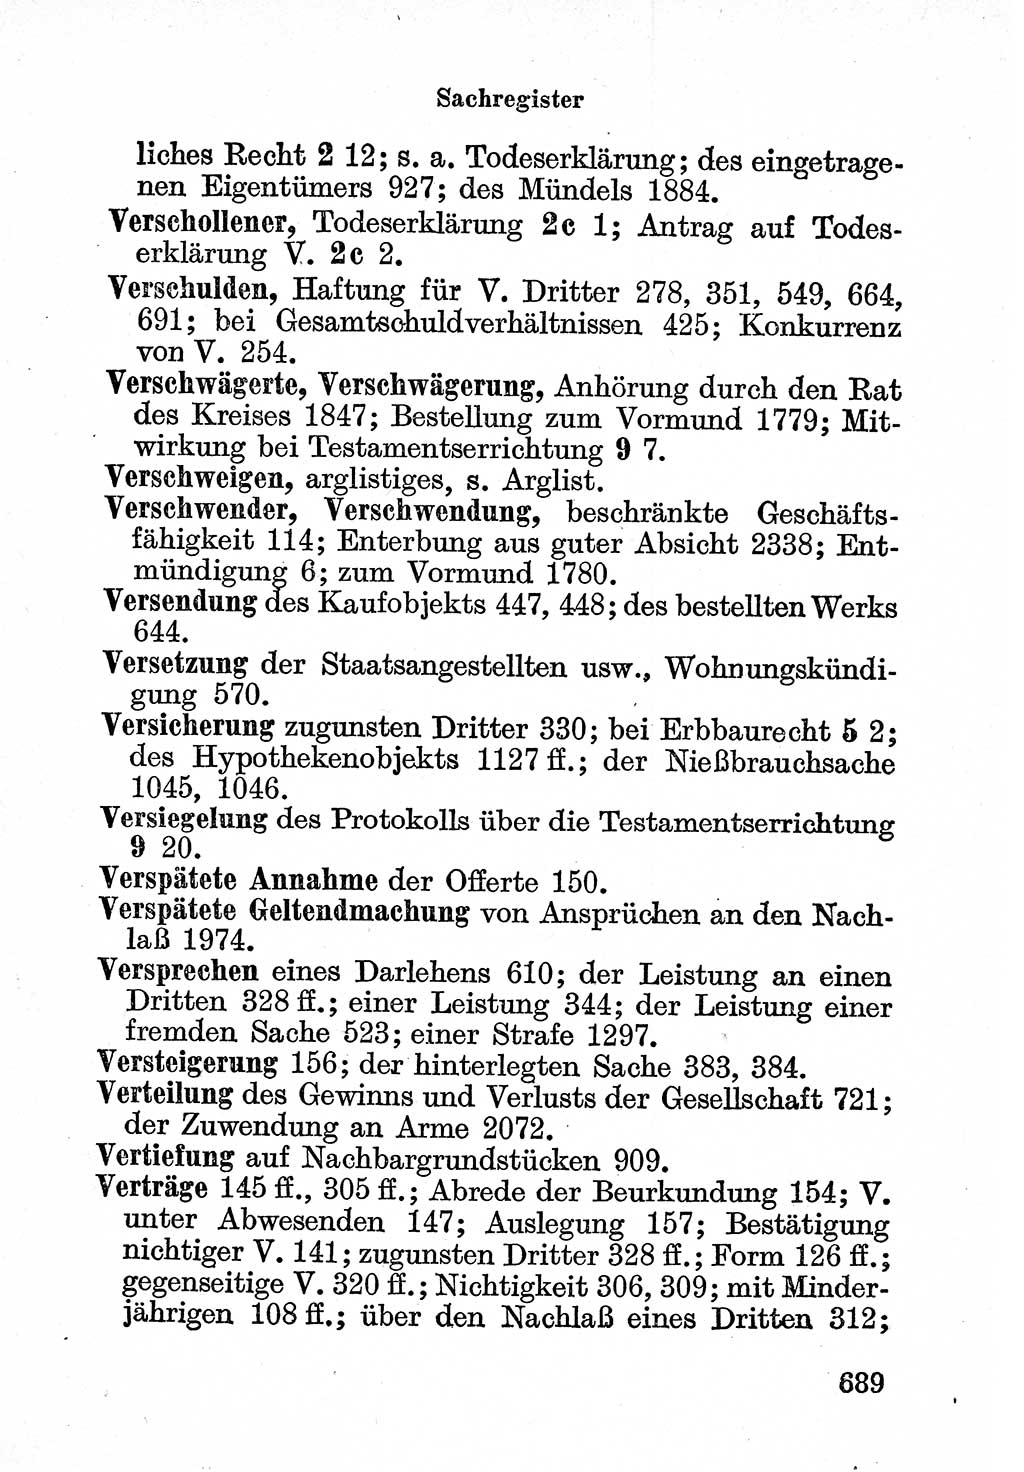 Bürgerliches Gesetzbuch (BGB) nebst wichtigen Nebengesetzen [Deutsche Demokratische Republik (DDR)] 1956, Seite 689 (BGB Nebenges. DDR 1956, S. 689)